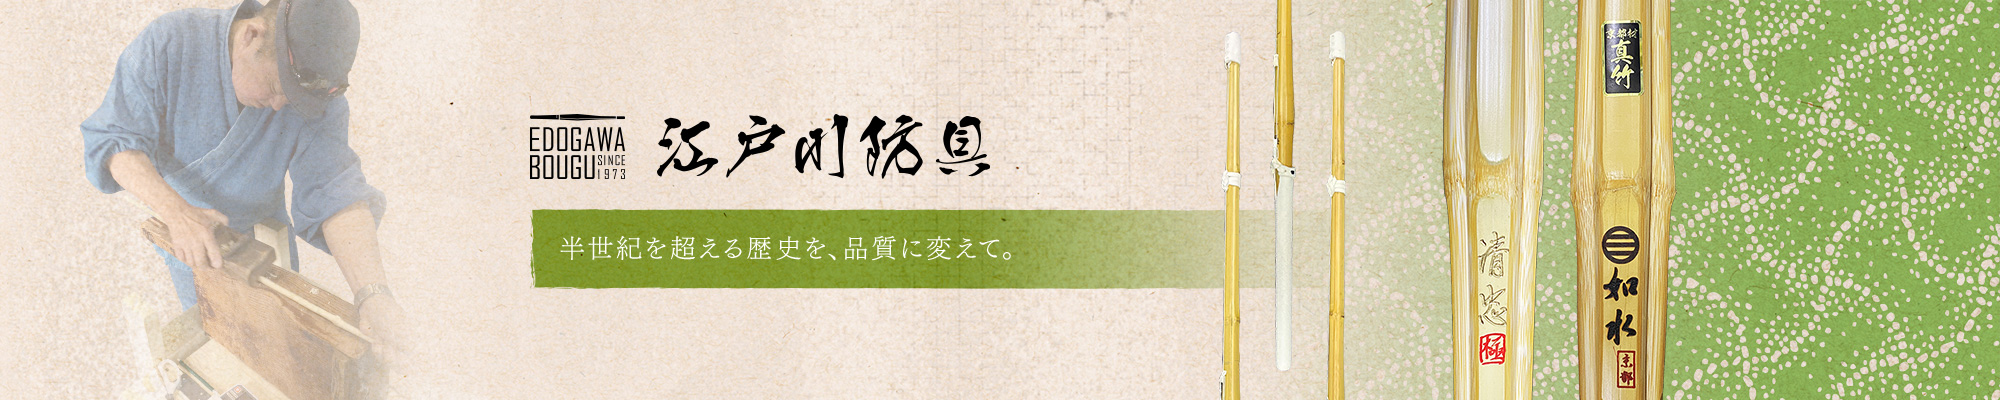 江戸川防具] オリジナル竹刀、名入れ、刺繍、また防具など剣道用具の販売